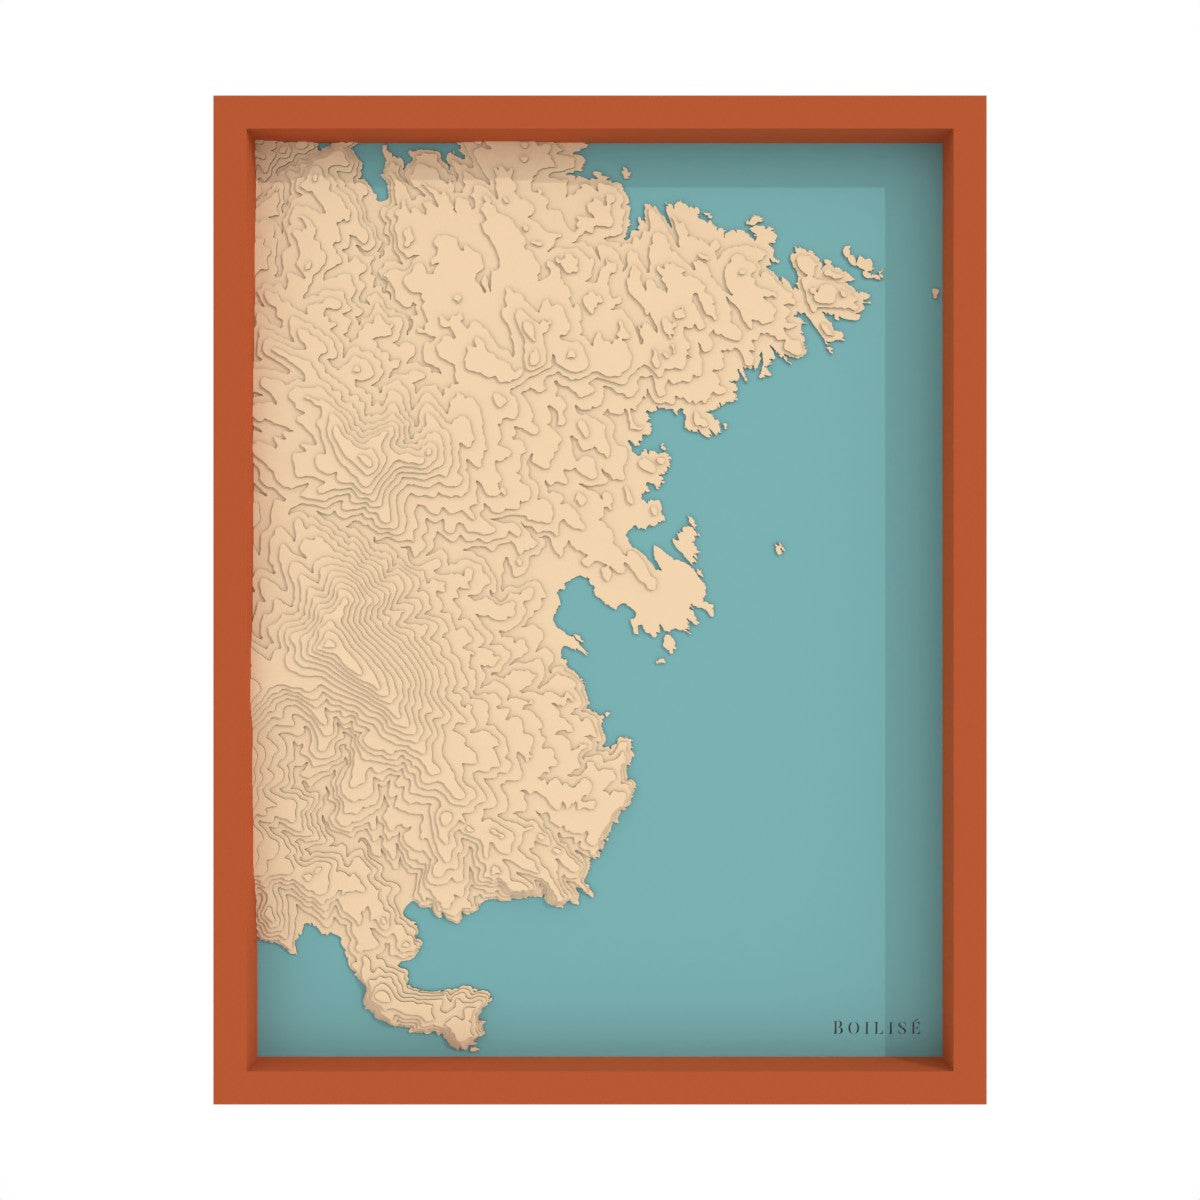 Map of Cadaqués